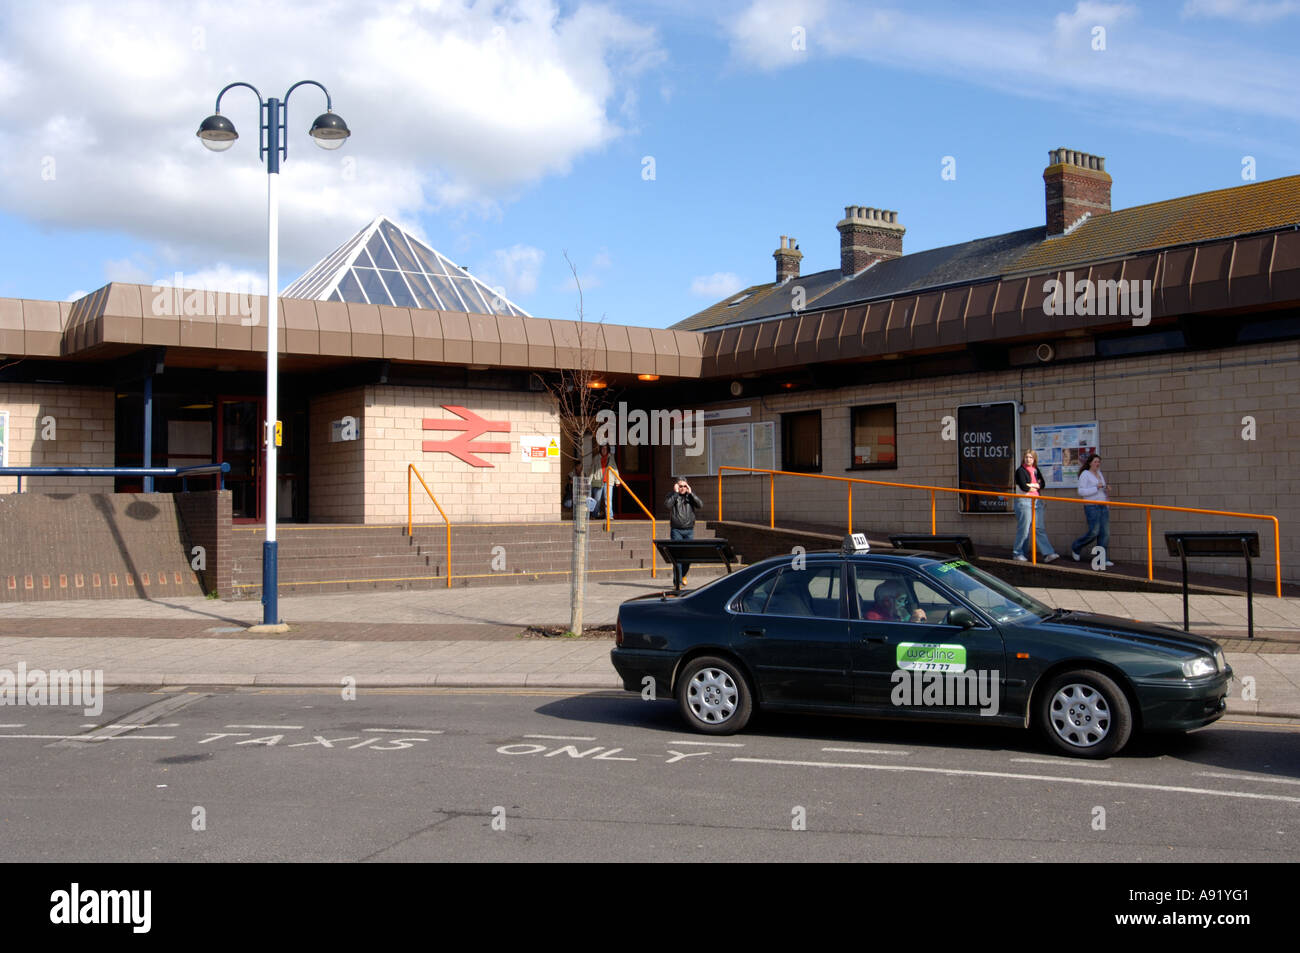 La gare de Weymouth, Dorset, Angleterre Royaume-uni Banque D'Images